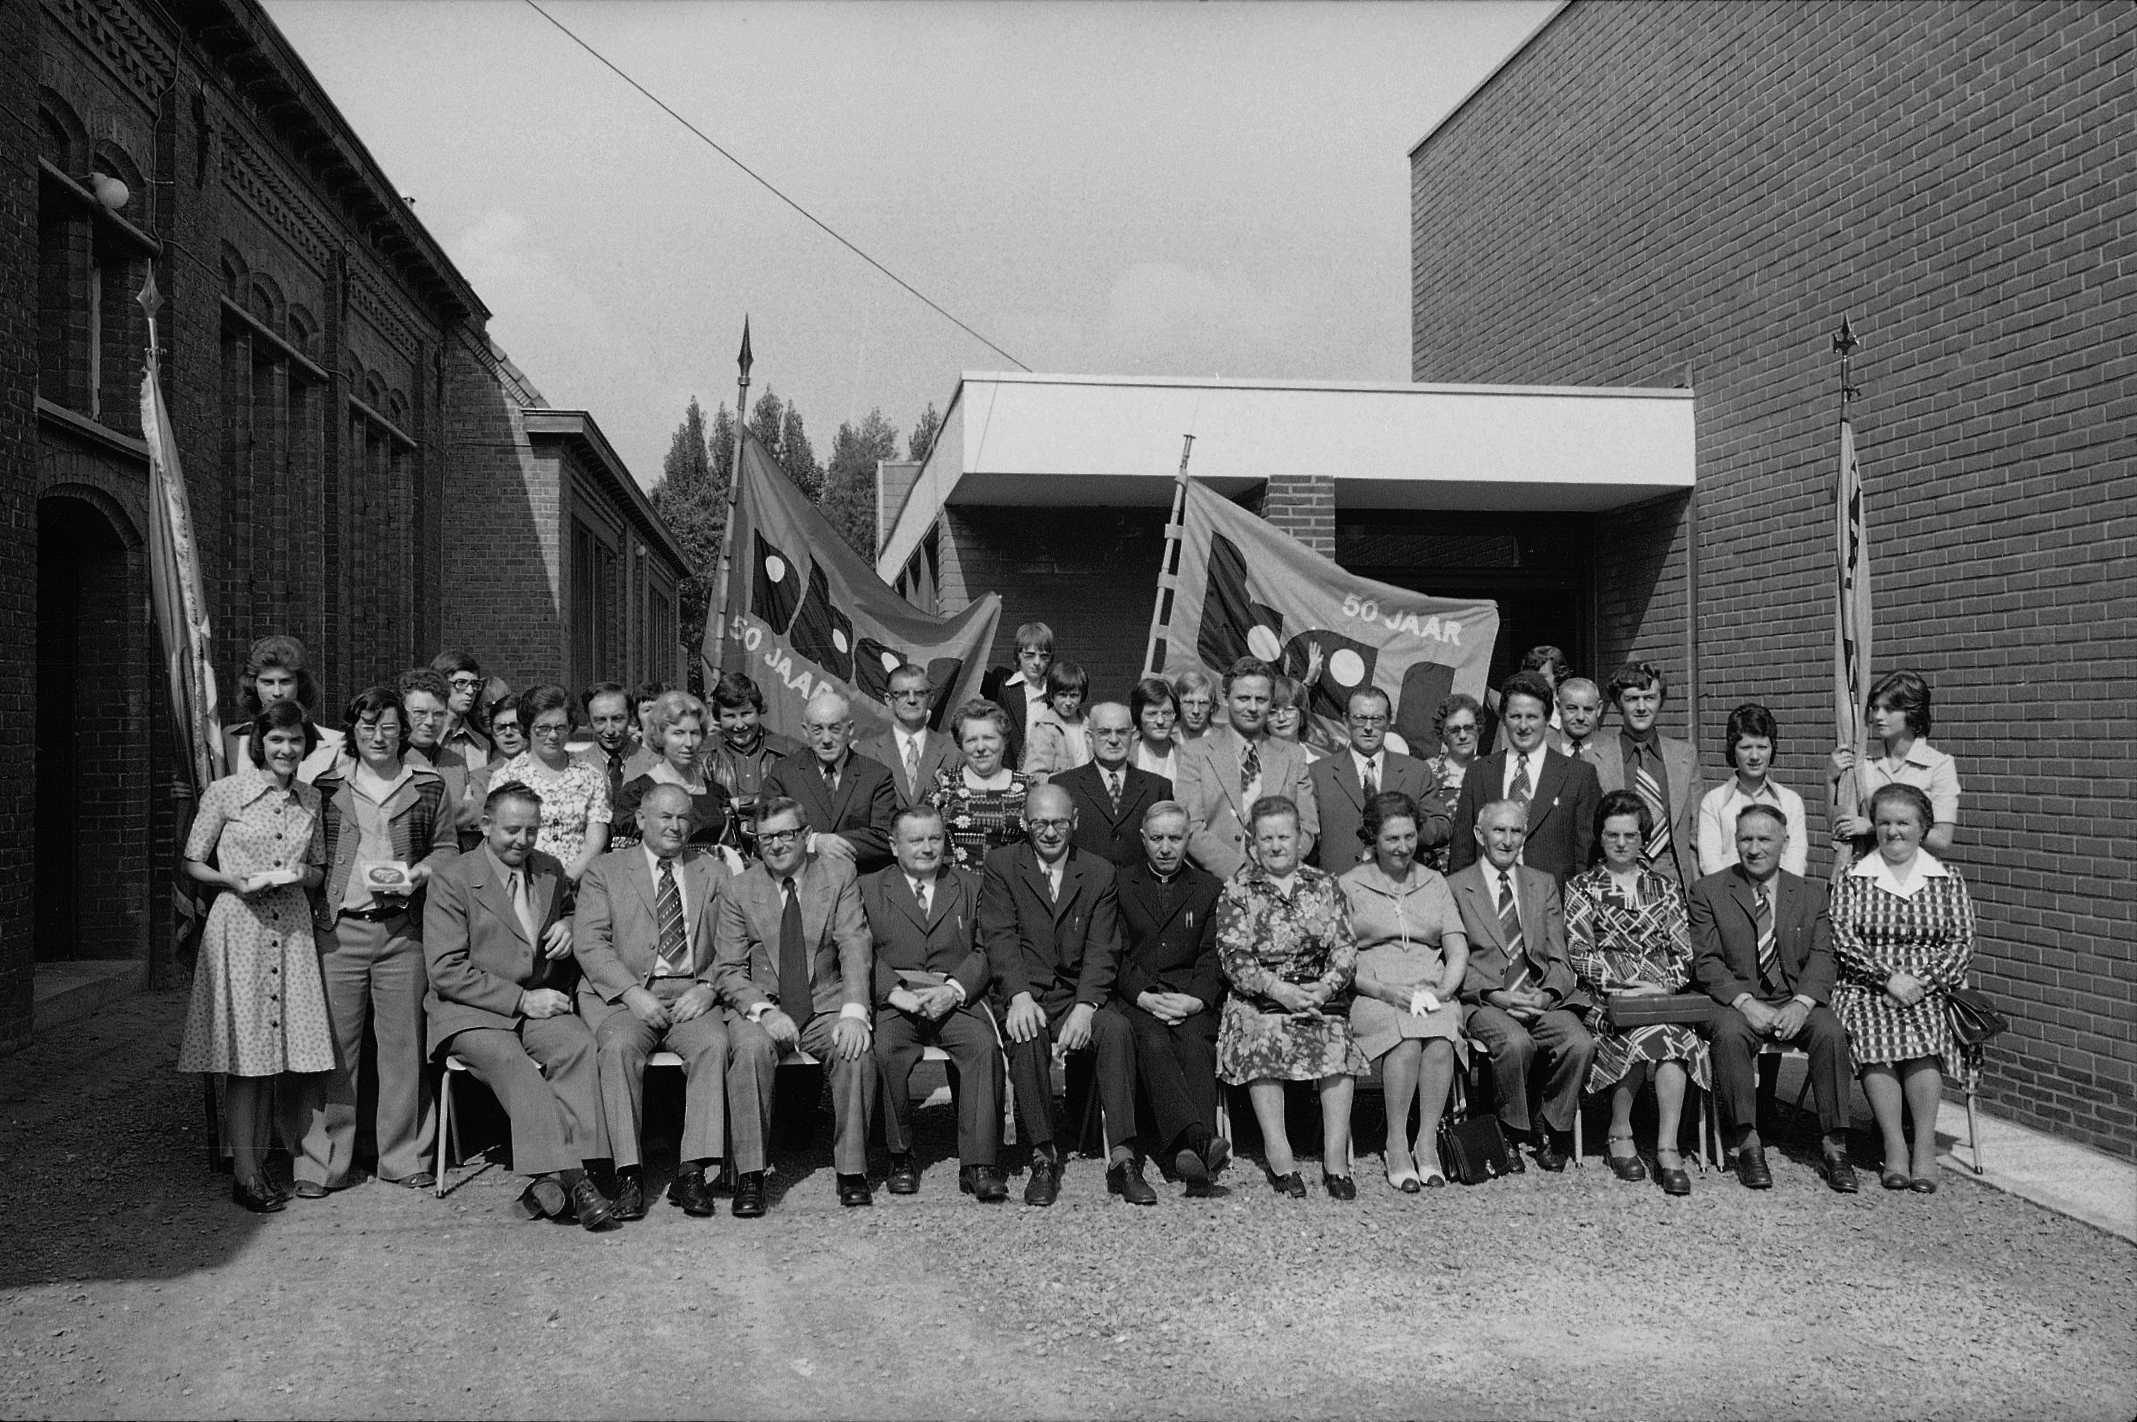 Stadsarchief zoekt medewerking Onderstaande foto is genomen in 1975 in Hulste. Toen vierde men de 50ste verjaardag van de KAJ/ VKAJ te Hulste. Zitten er bekende gezichten tussen? Laat het ons weten!